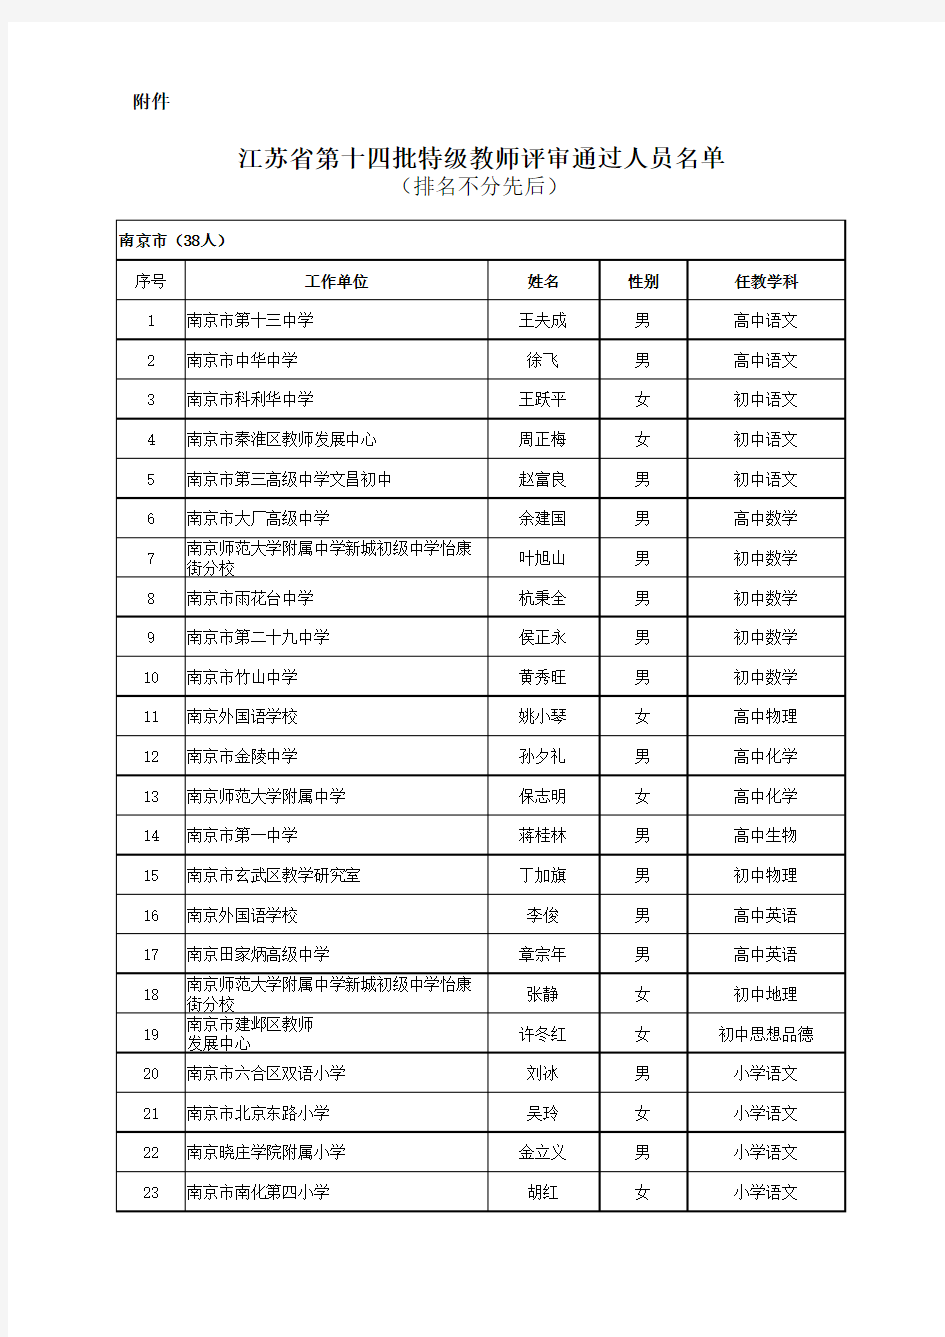 江苏省第十四批特级教师评审通过人员名单